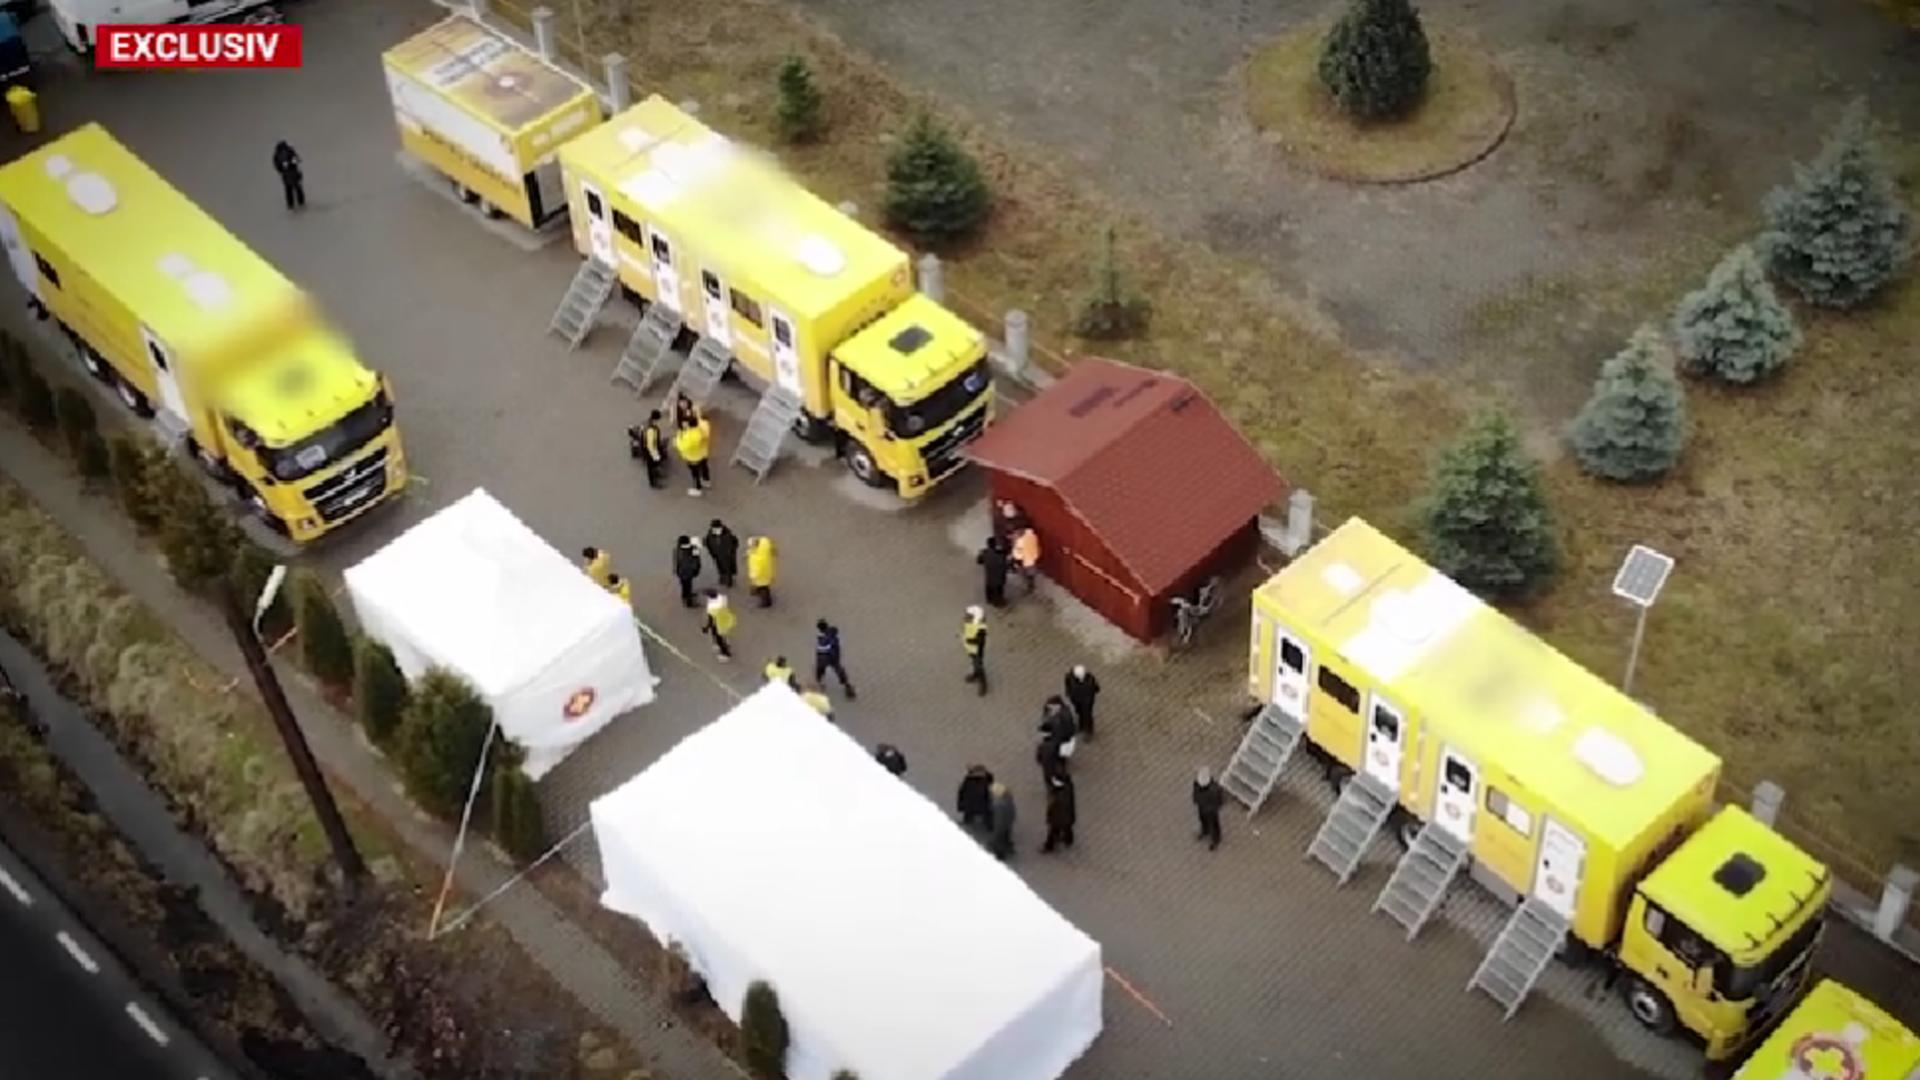  Servicii medicale gratuite pentru sute de mureșeni: Caravana Medicală a bifat primele două locații din Mureș / Captură video